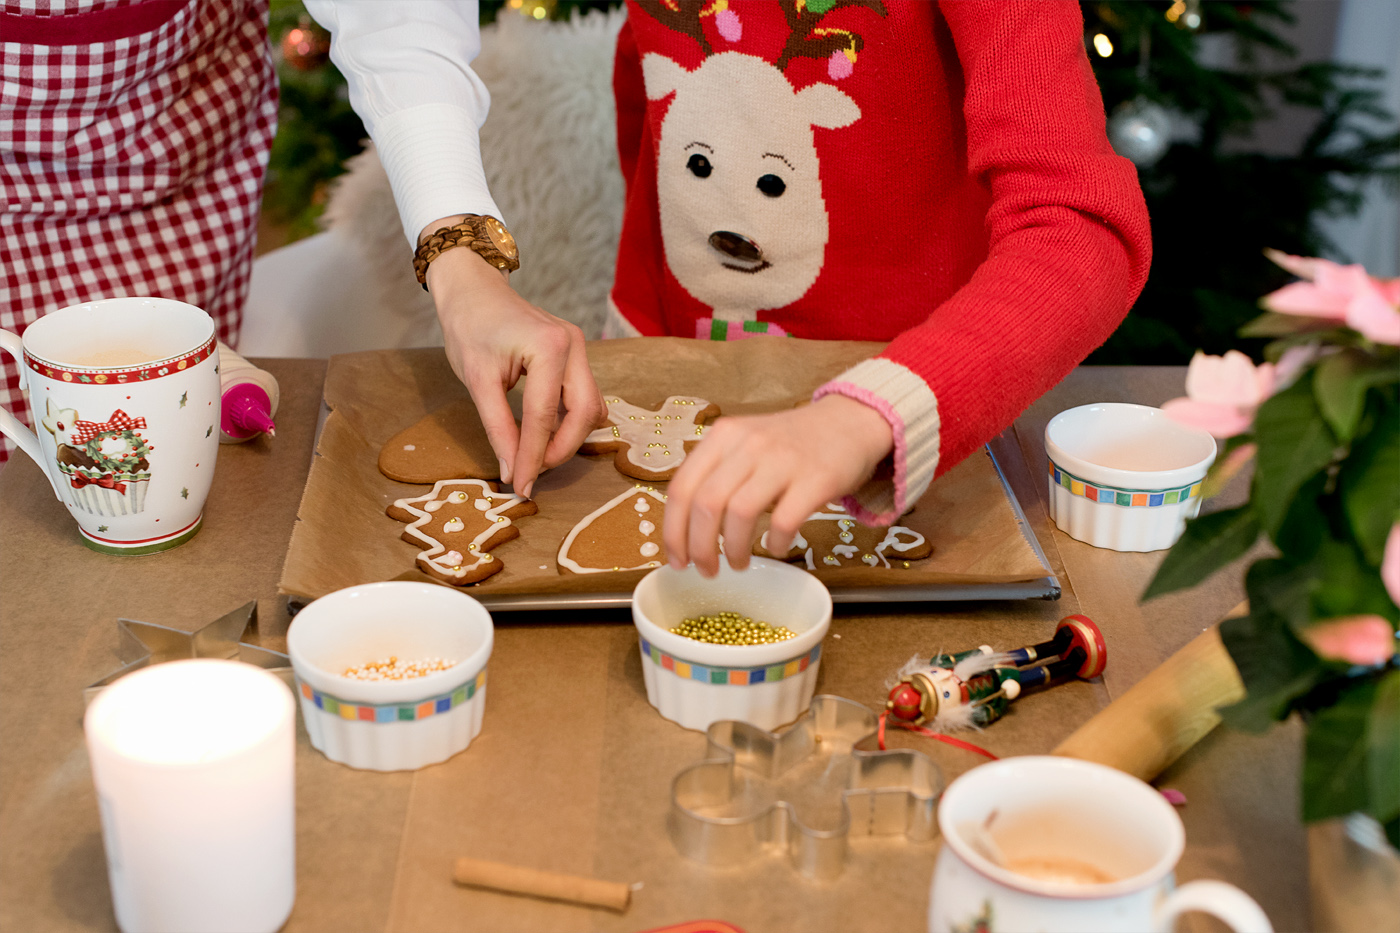 gingerbread-people-honigkuchen-plaetzchen-rezept-weihnachtsbaeckerei-jord-watch-wood-watch-uhr